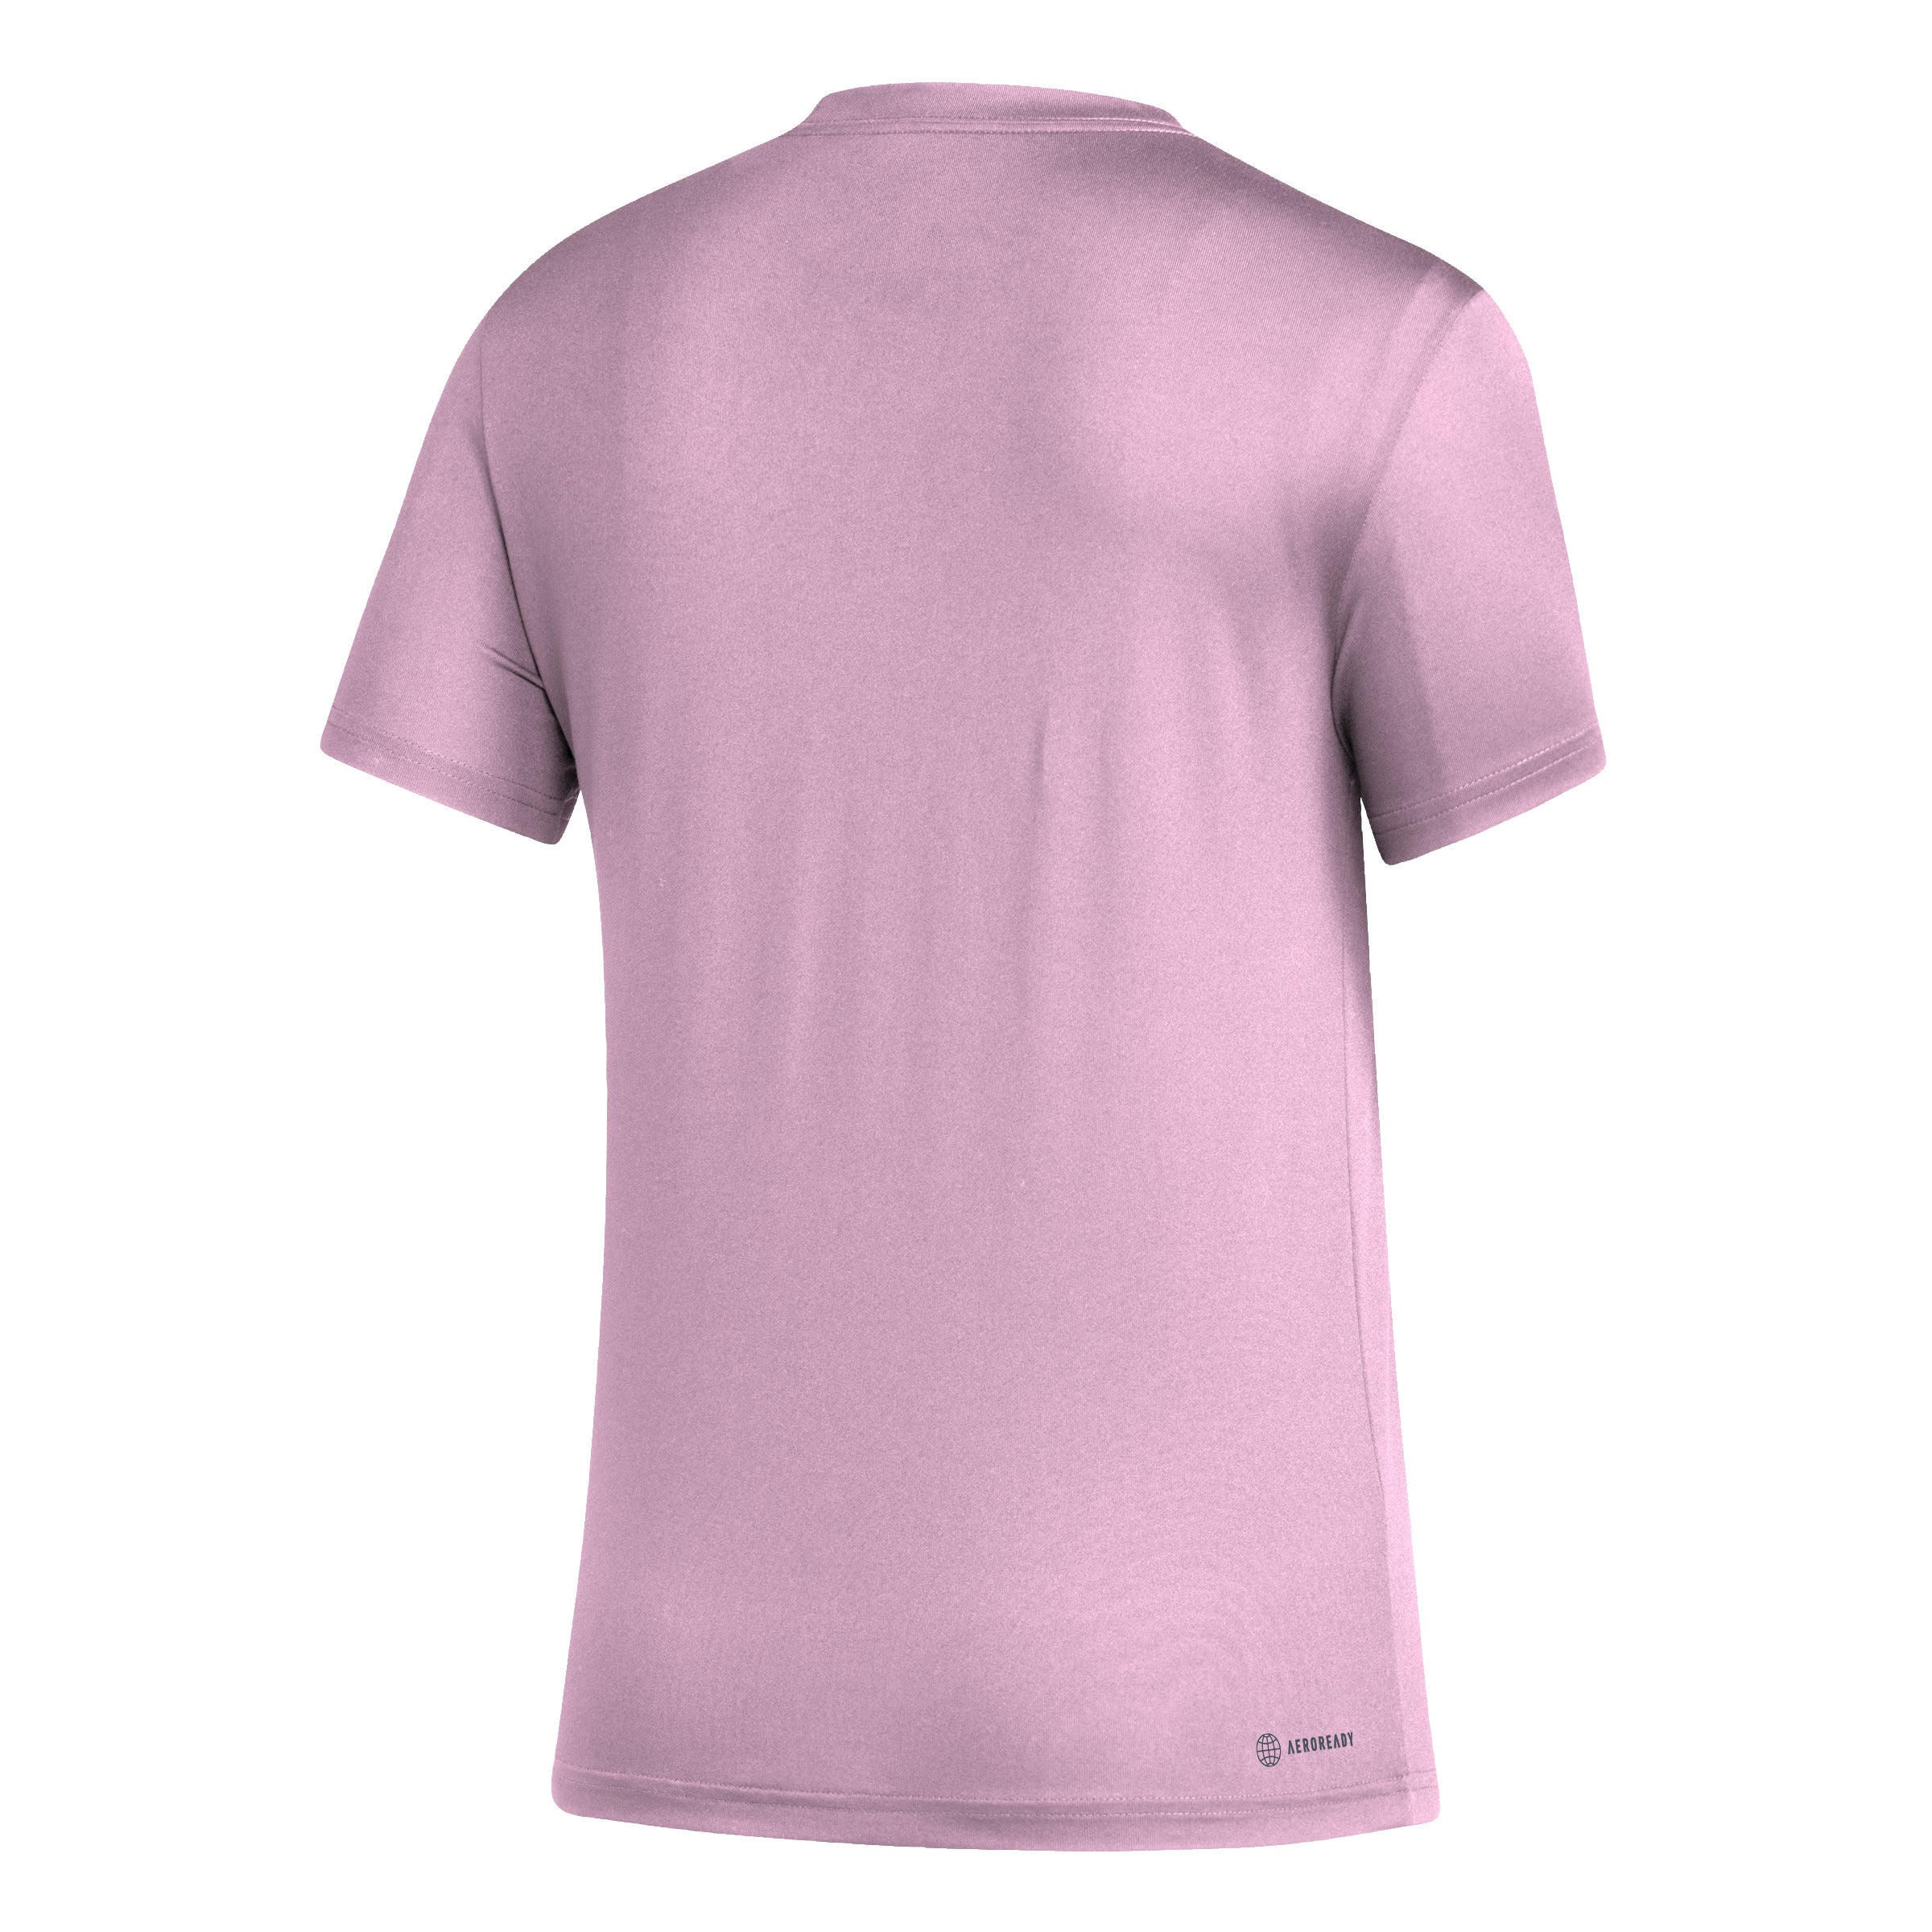 Inter Miami CF adidas Women's Club Icon Pregame T-Shirt - Pink